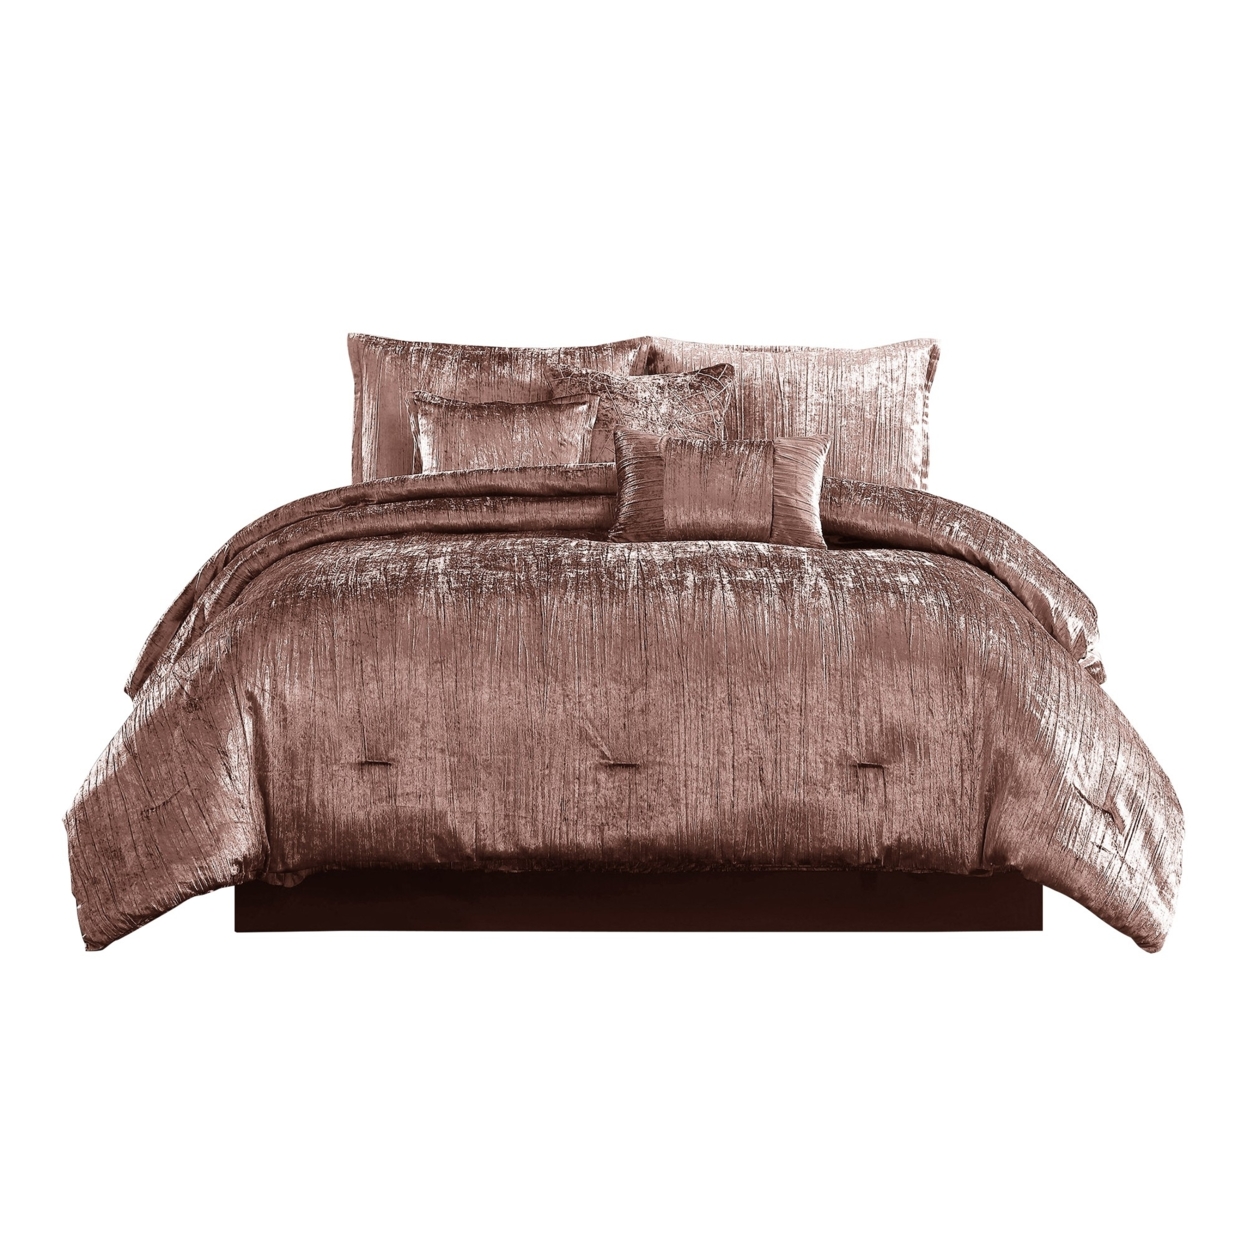 7 Piece Queen Comforter Set With Shimmering Appeal, Pink- Saltoro Sherpi